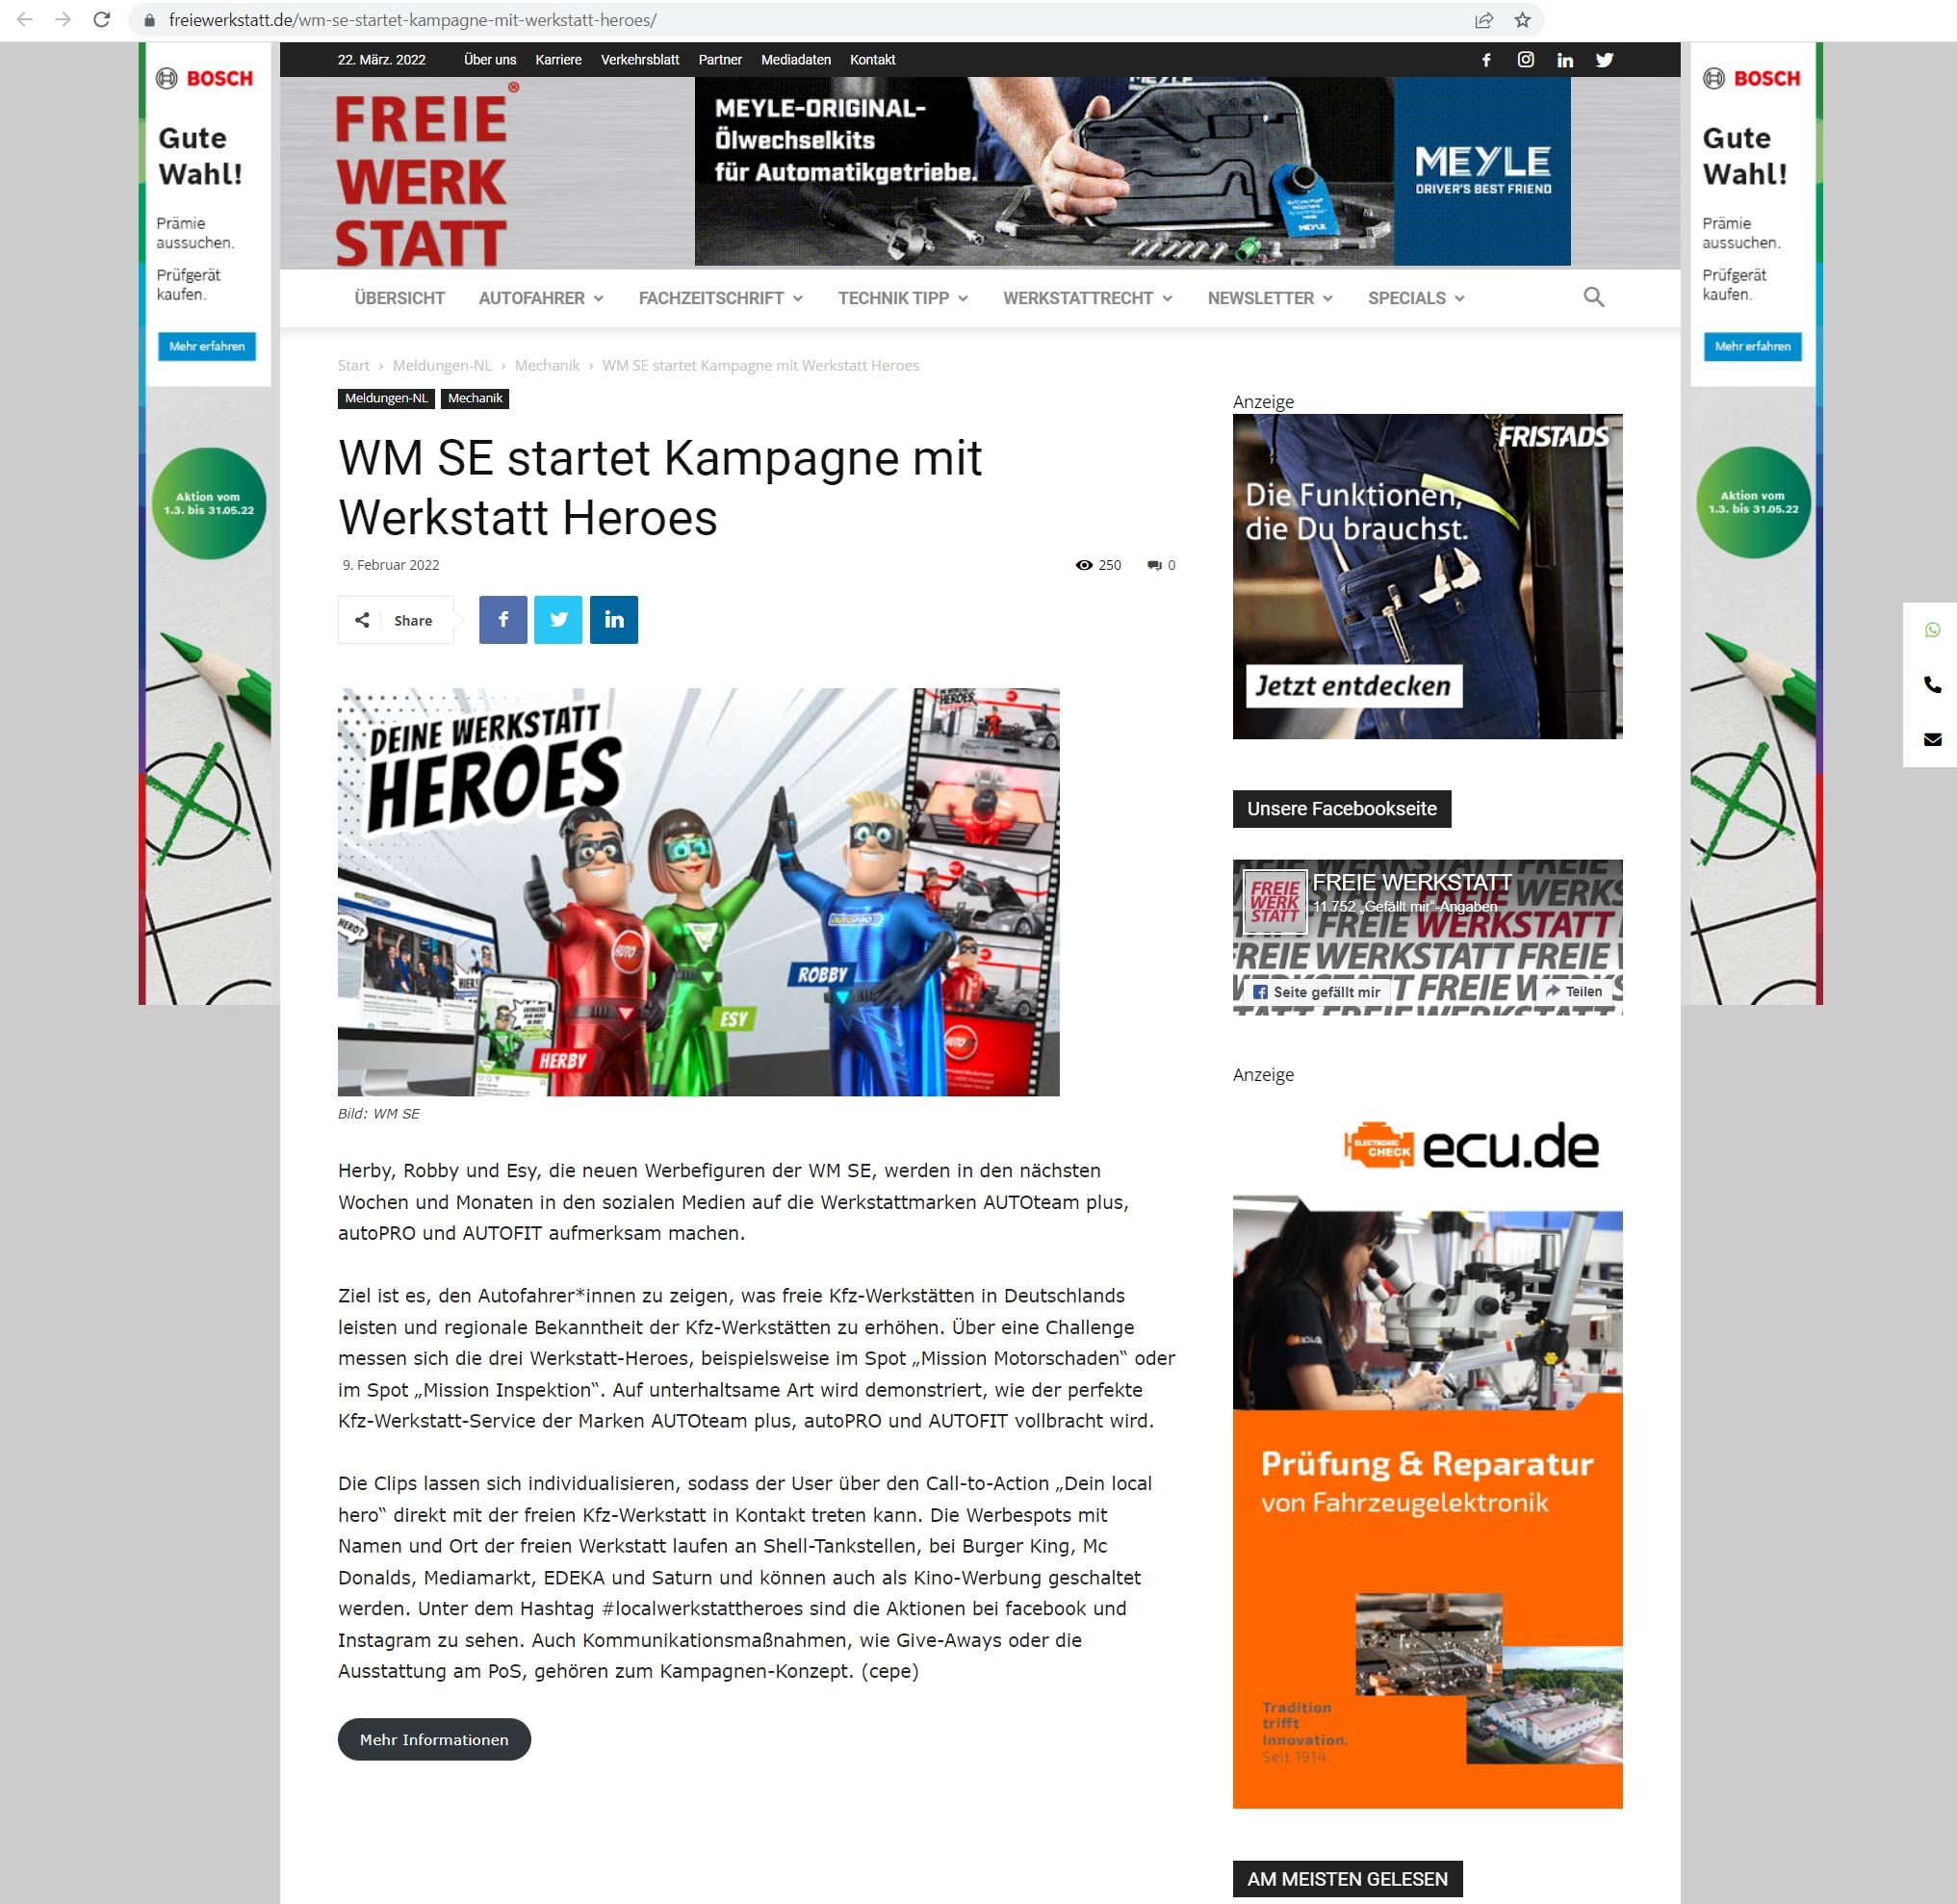 wm_se_kompagne_werkstatt_heroes Werkstatt Heroes / AUTOteam / autoPRO / AUTOFIT